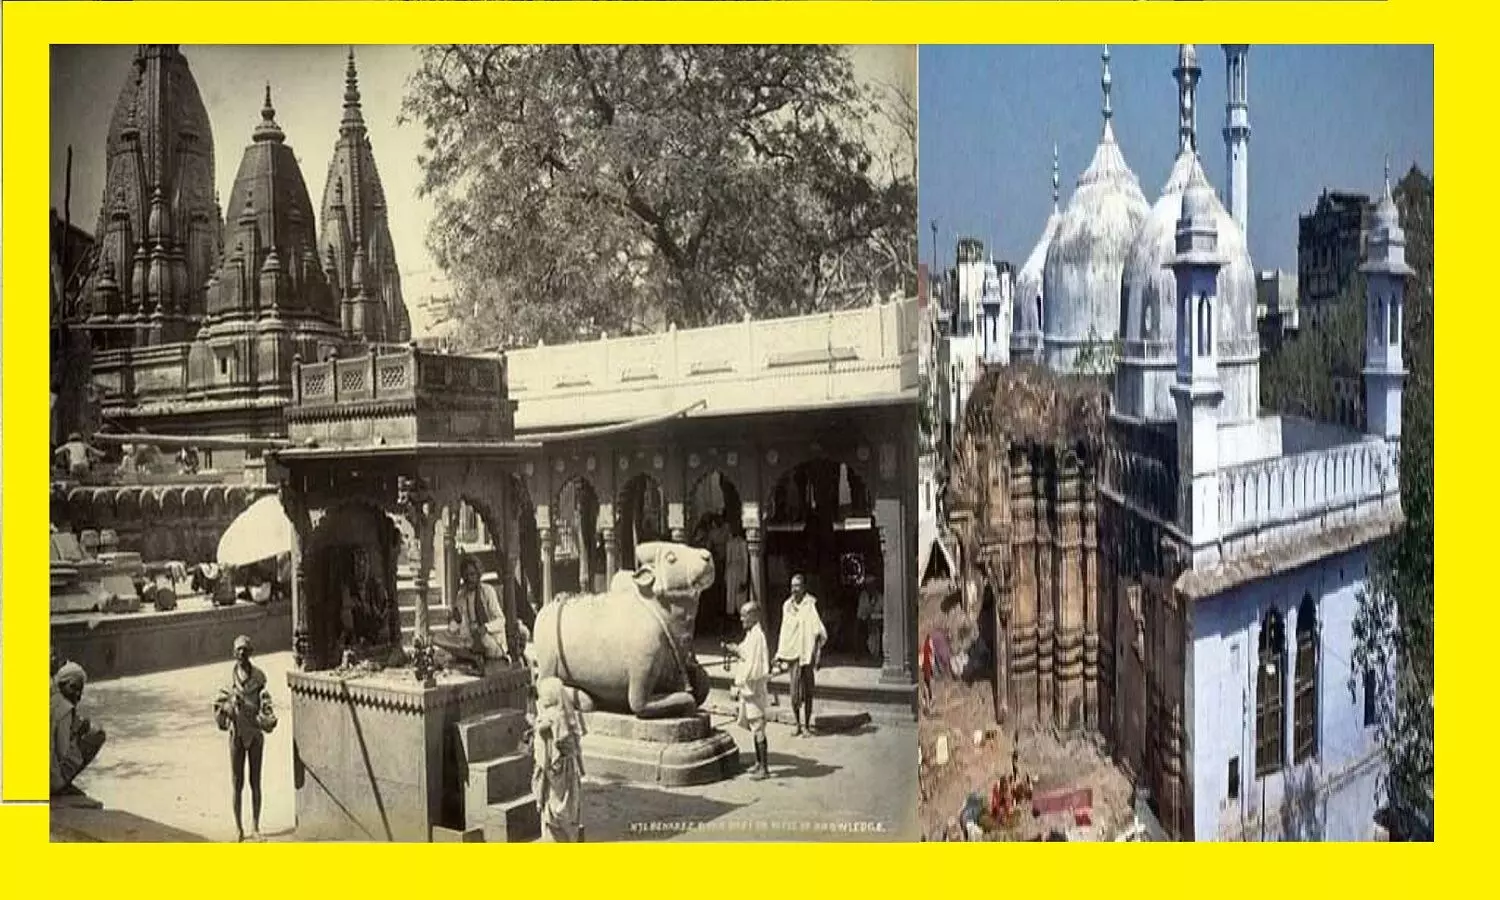 काशी विश्वनाथ मंदिर और ज्ञानवापी मस्जिद का इतिहास: इतिहास से भी पुराने विश्वनाथ मंदिर को मुग़लों ने 4 बार तोडा